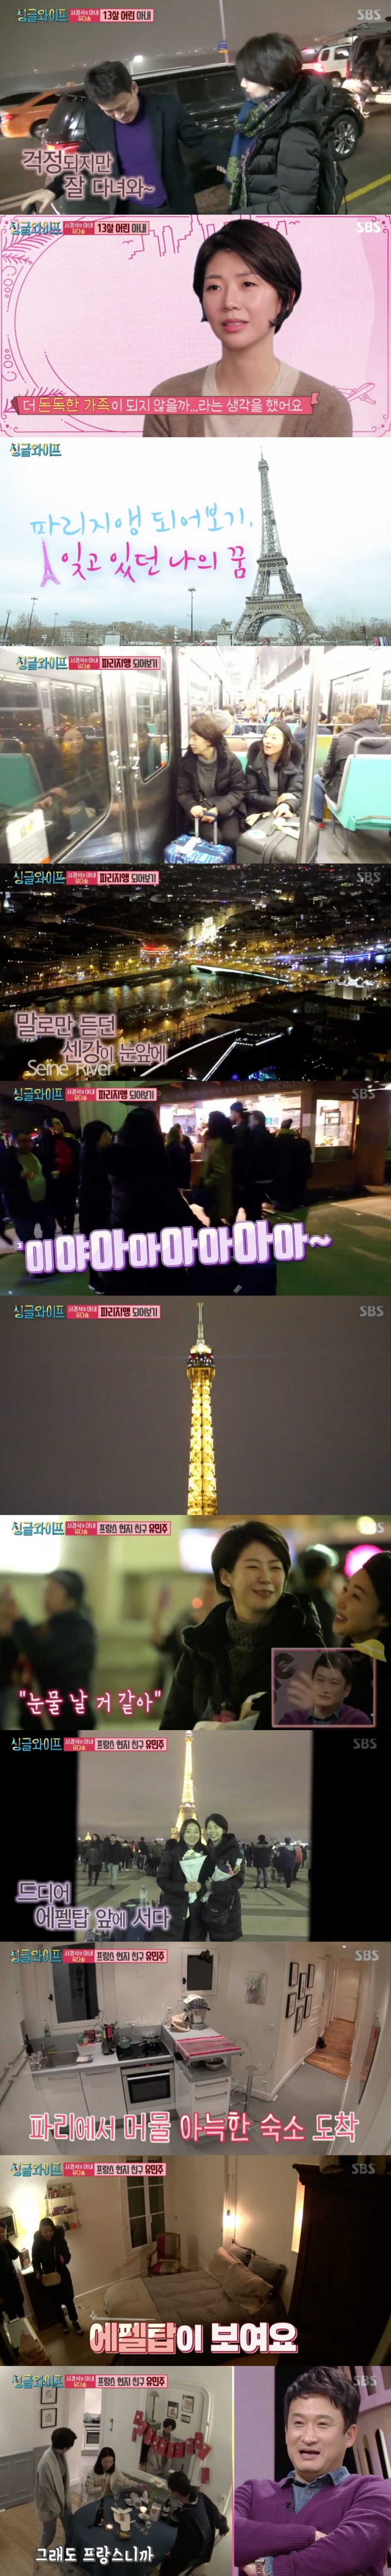 SBS ‘싱글와이프2’ 방송 캡쳐